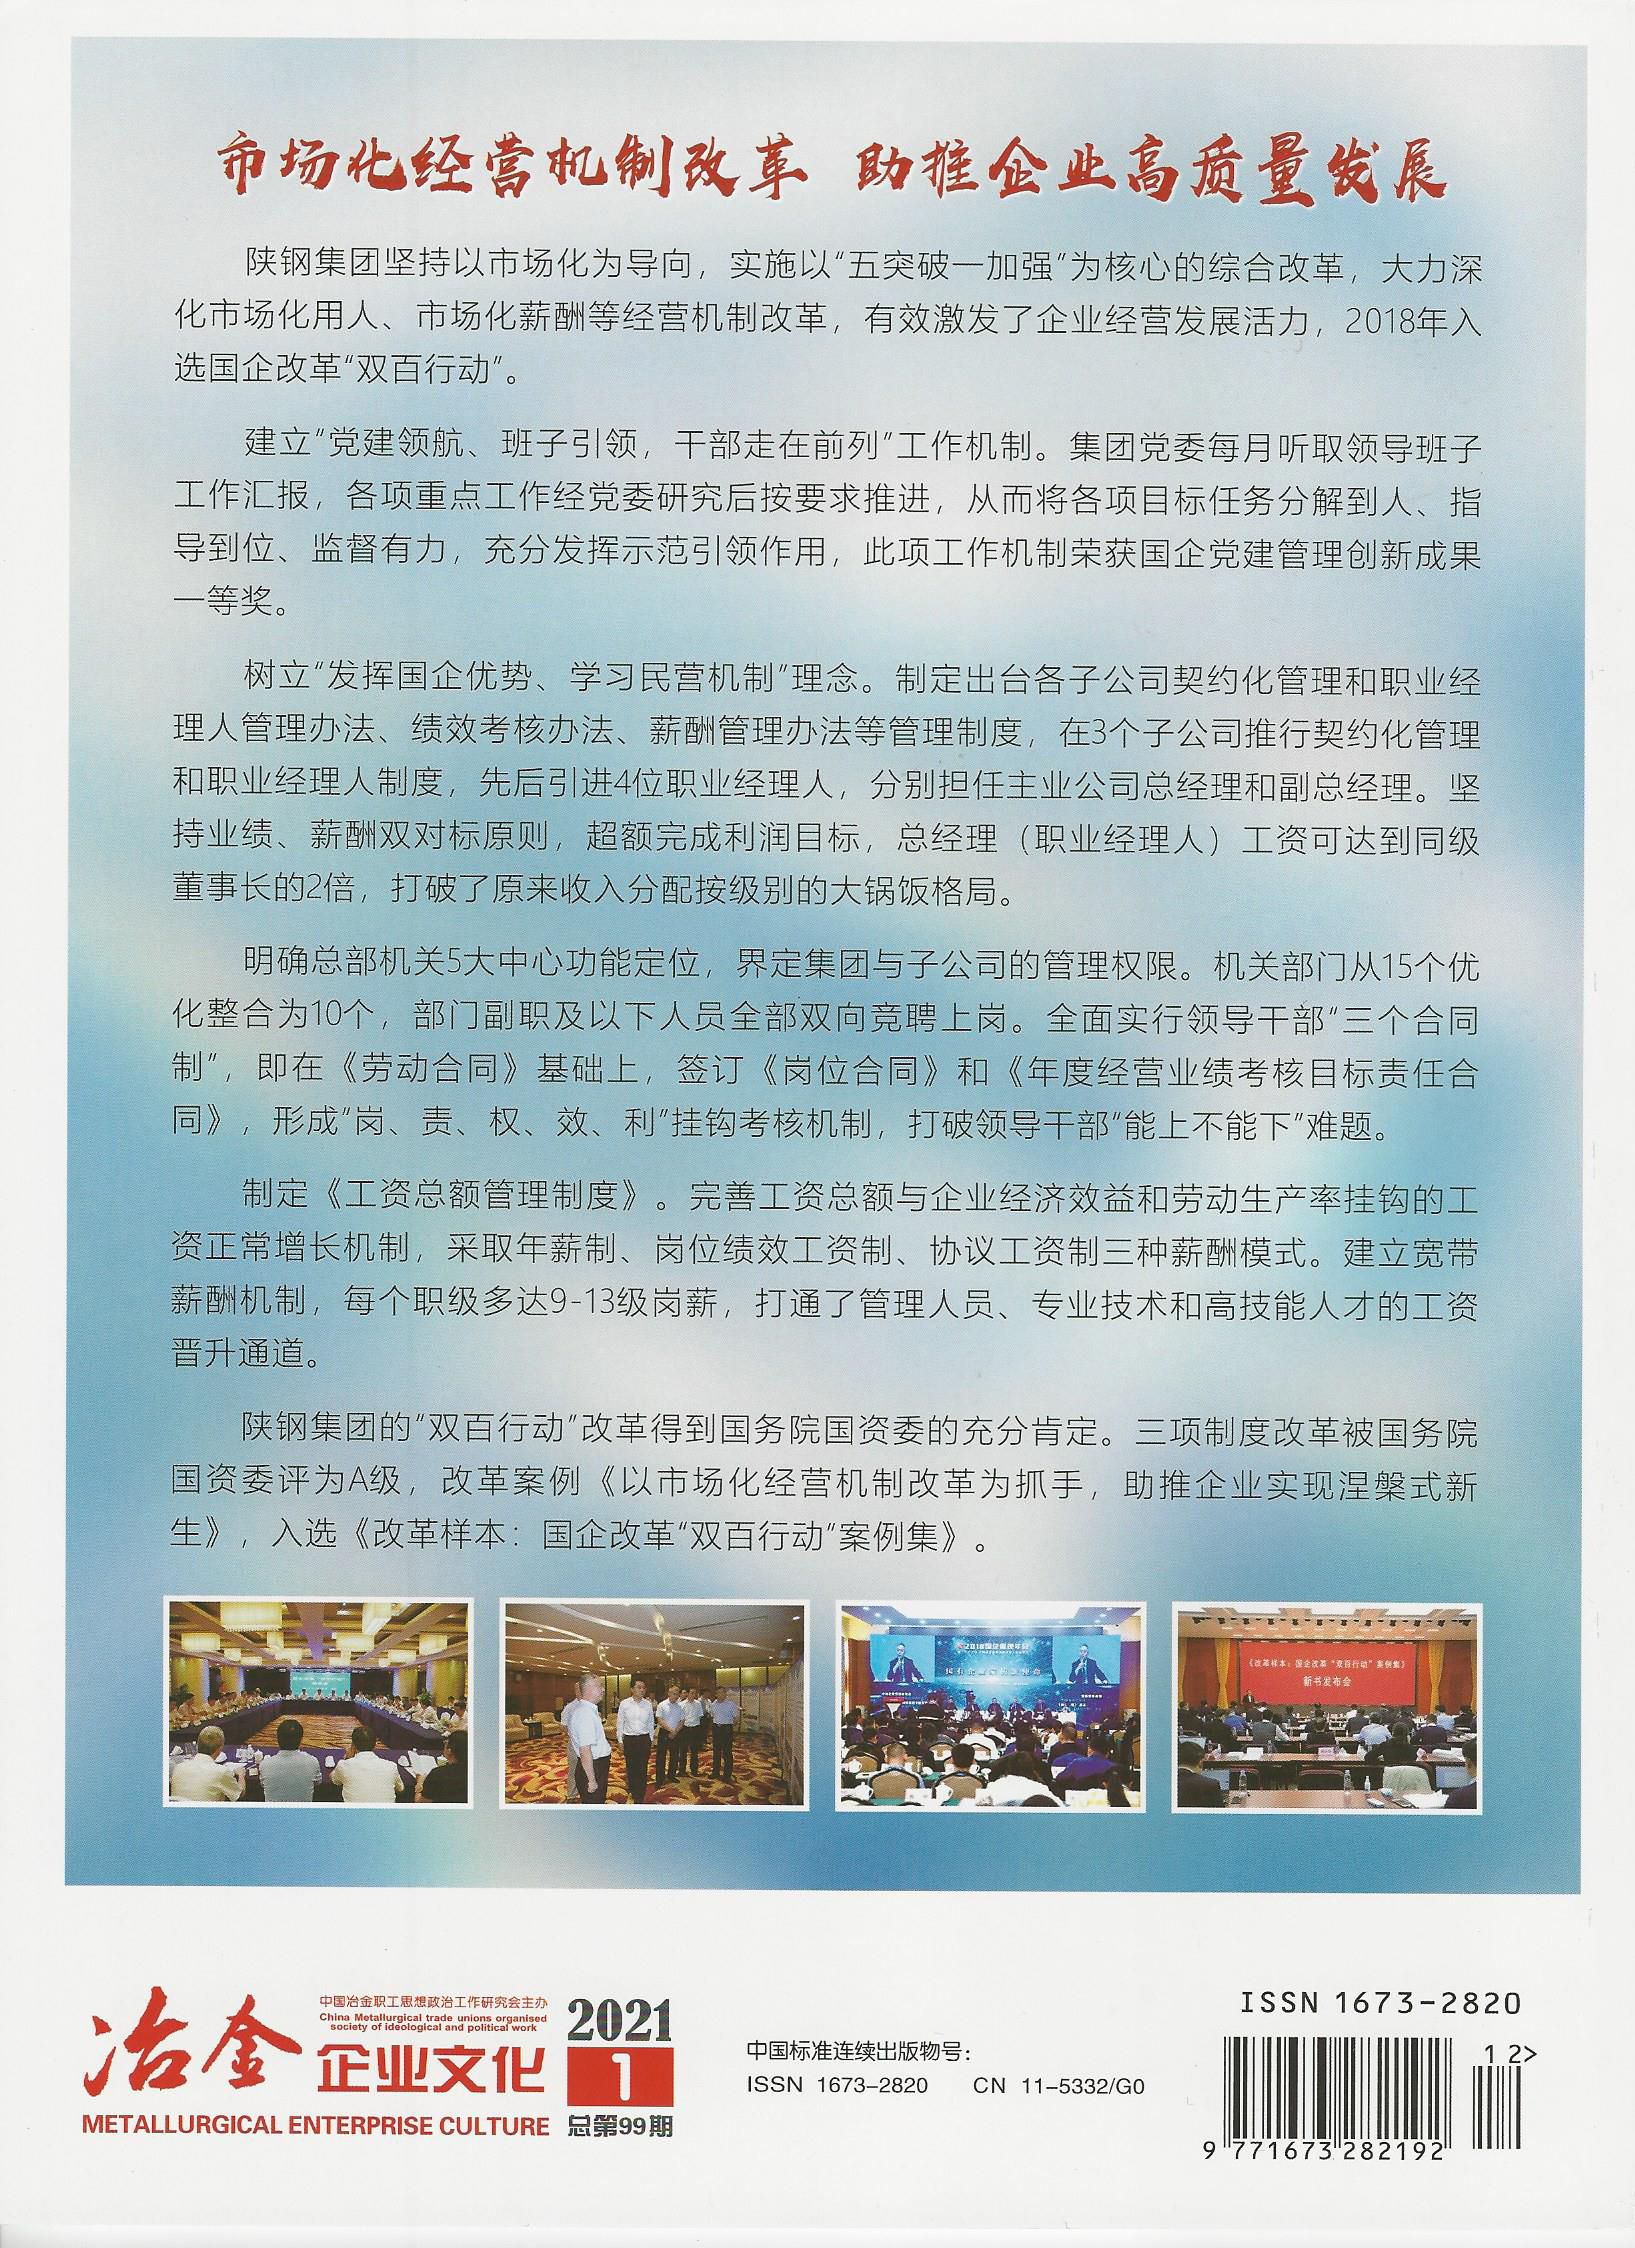 陕钢集团改革案例登上《冶金企业文化》杂志2021年首期封面